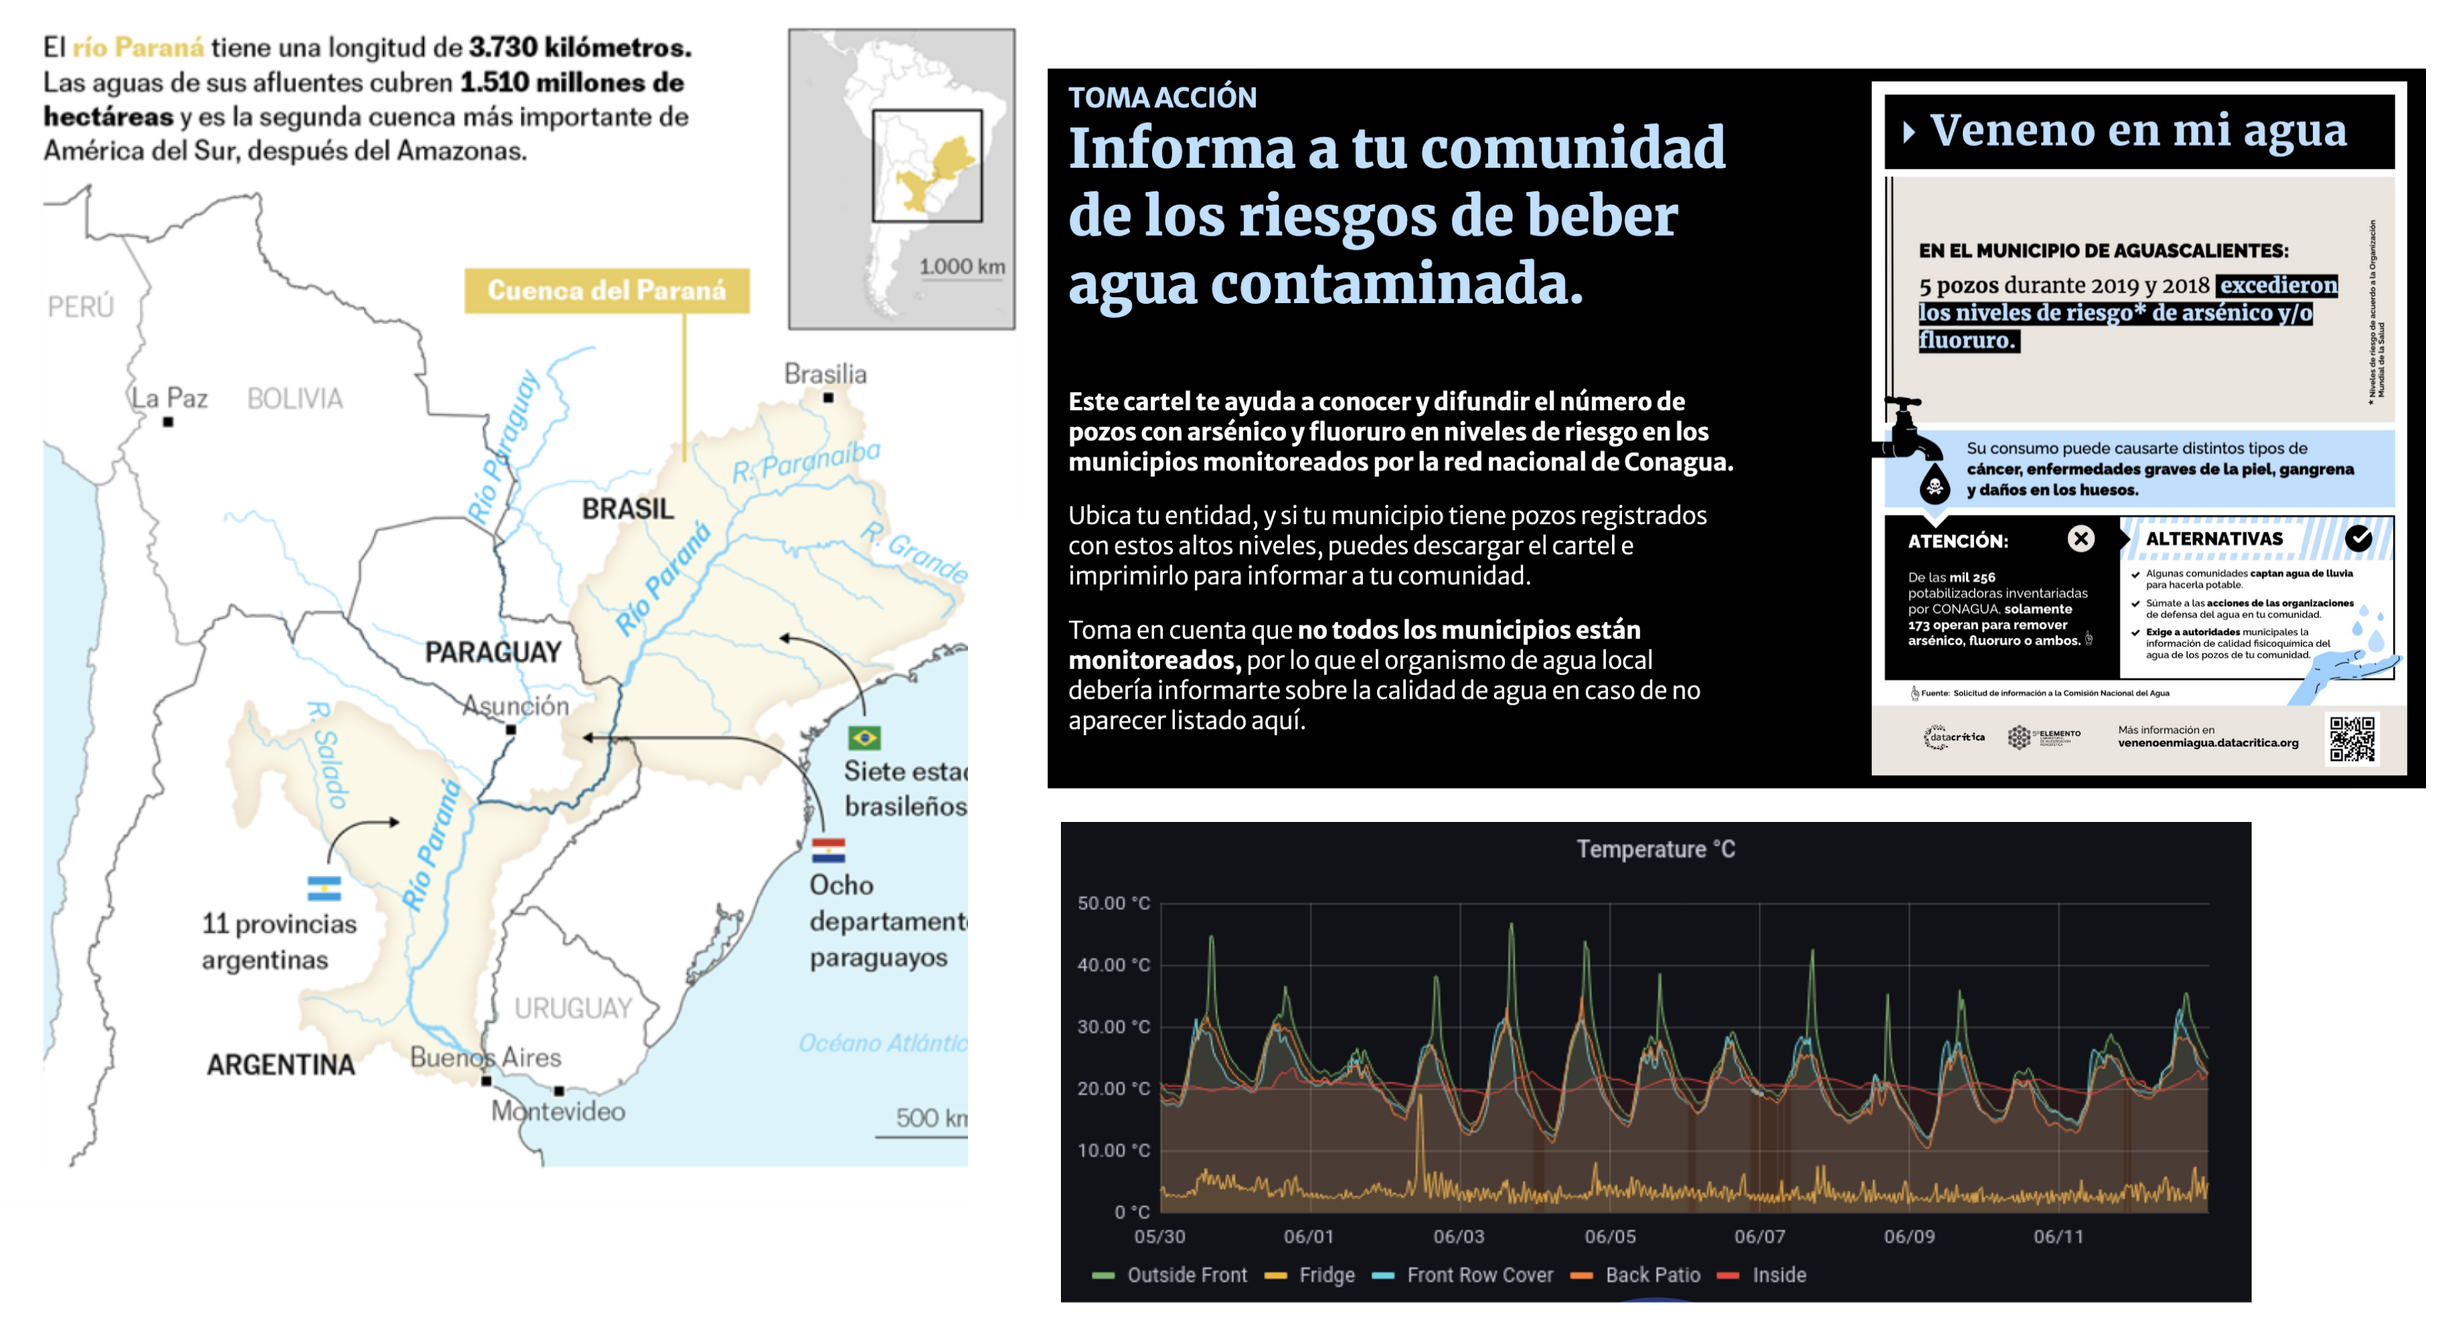 Imágenes con mapas que muestran la deforestación del Paraná, infografías de la campaña Veneno en mi agua y gráficos con datos medioambientales recogidos por sensores de Data Crítica y FullSteamLabs